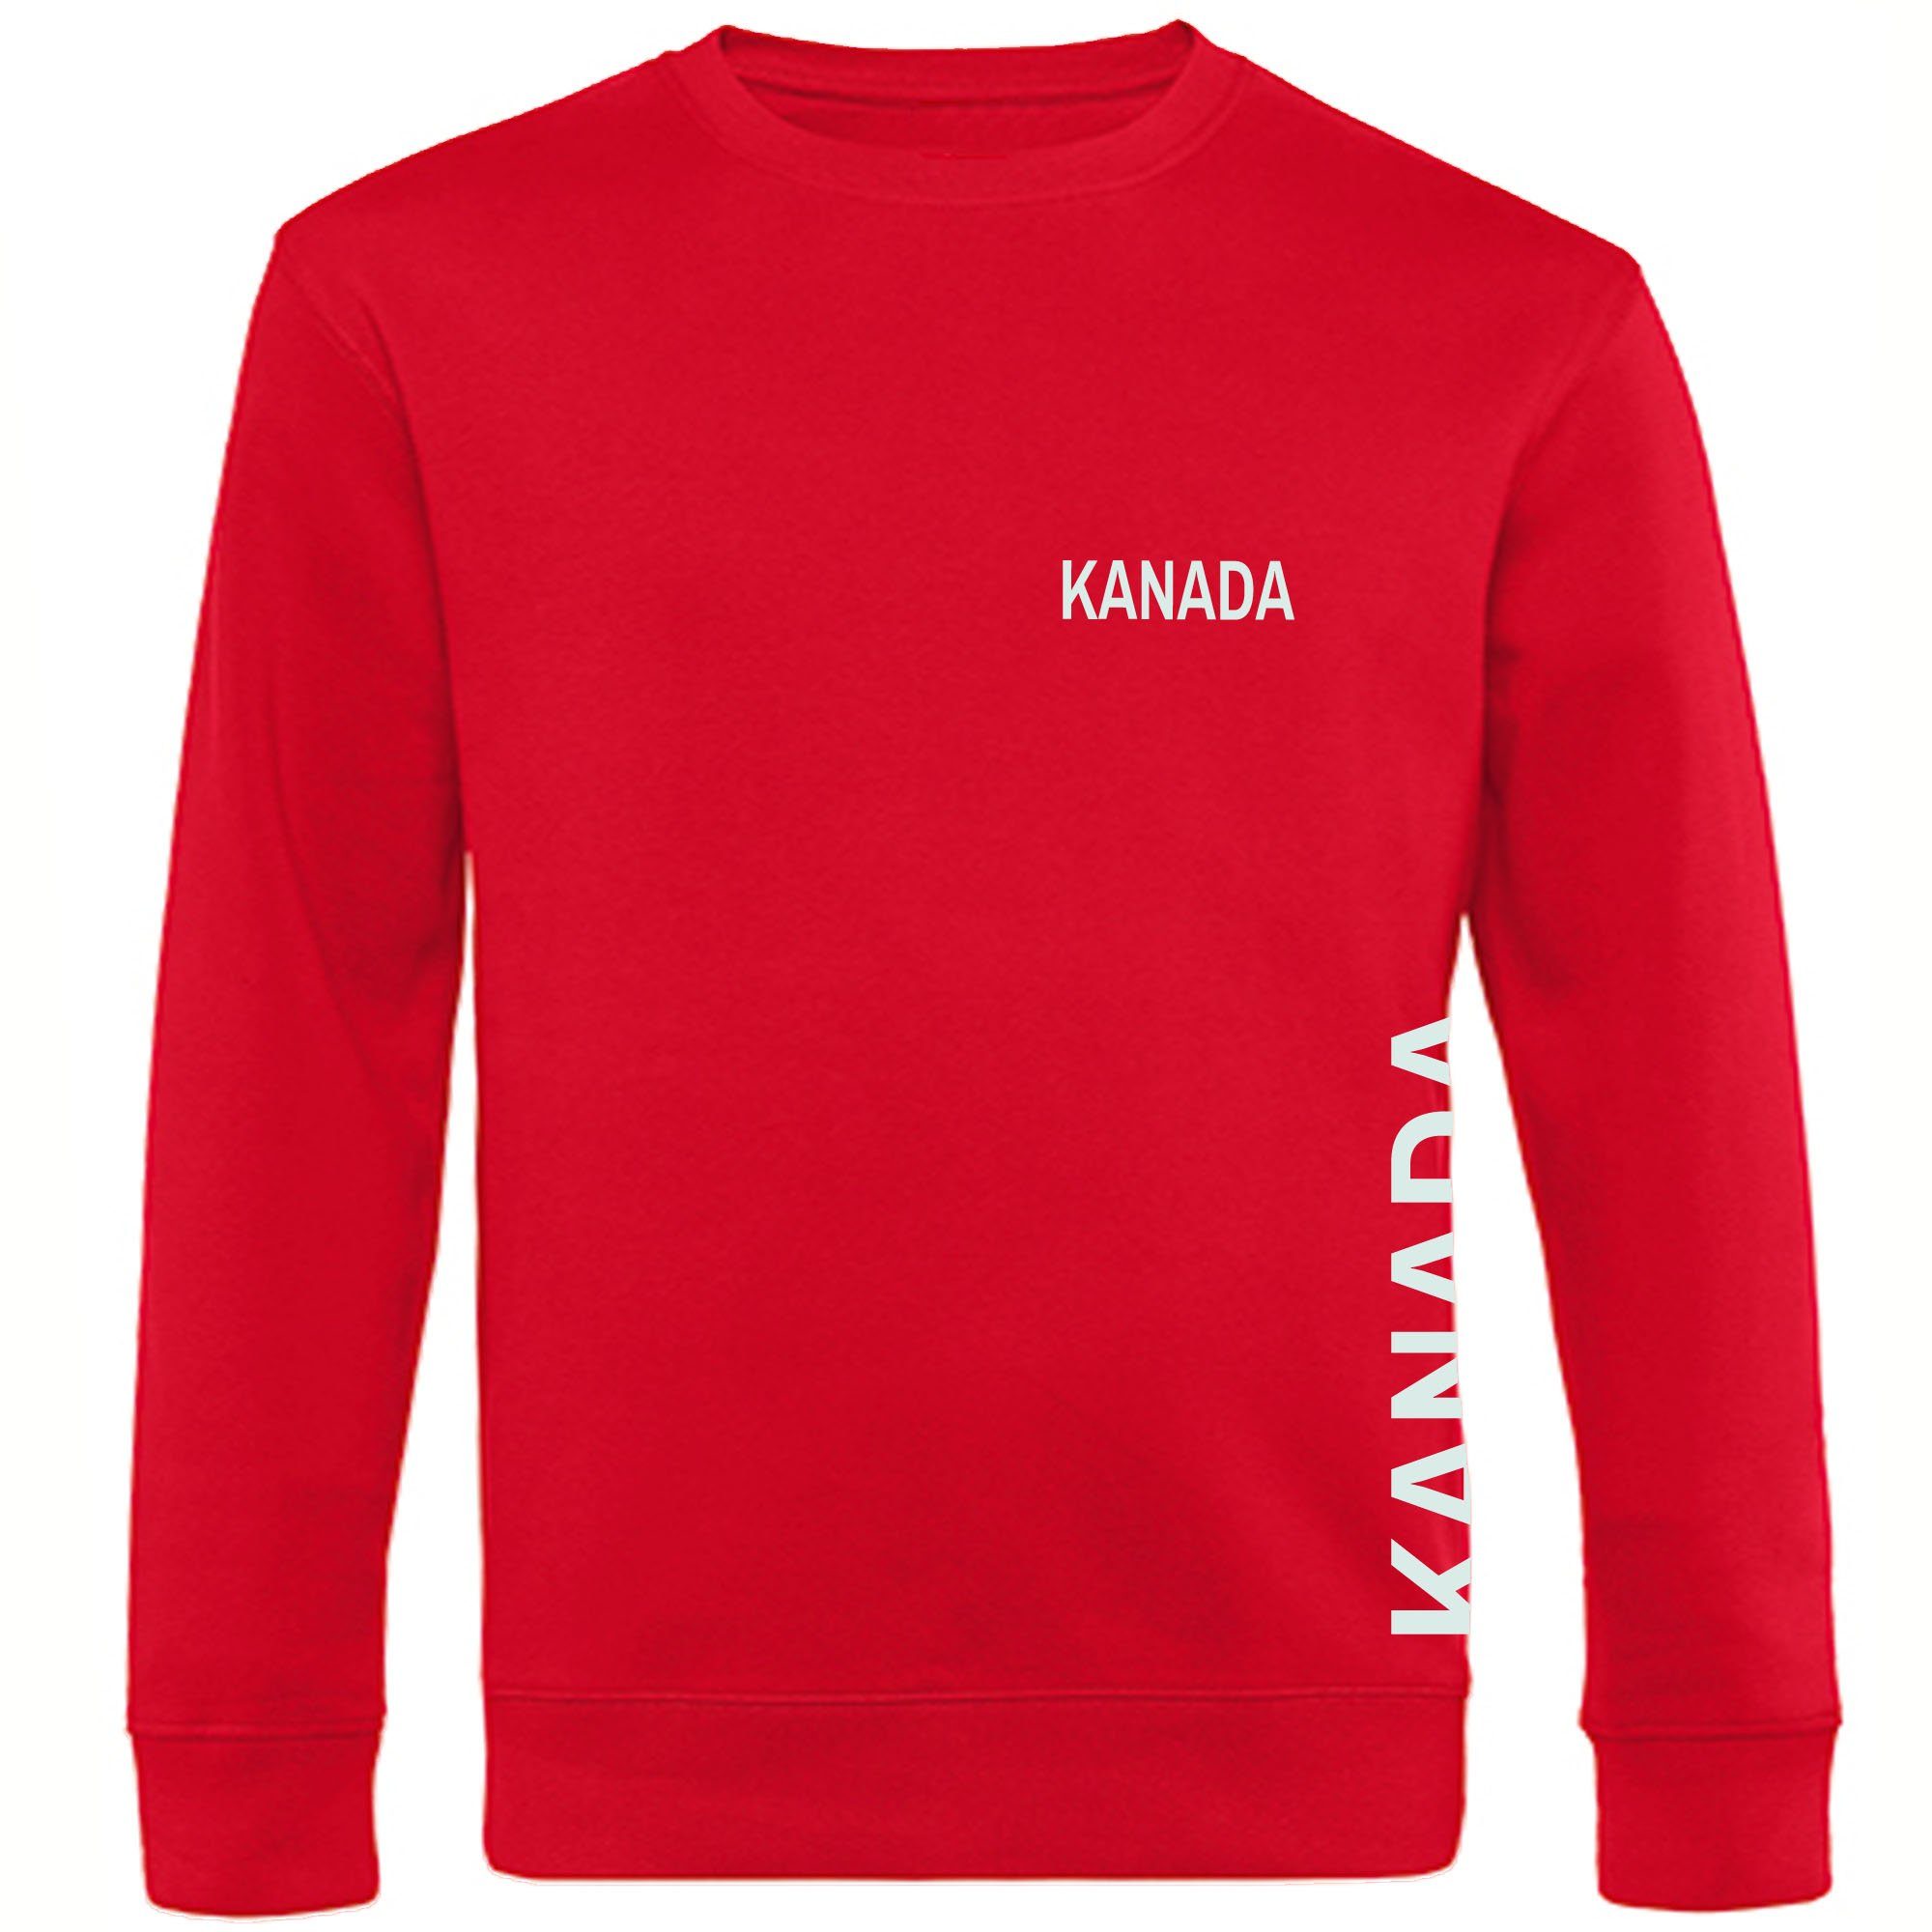 multifanshop Sweatshirt Kanada - Brust & Seite - Pullover